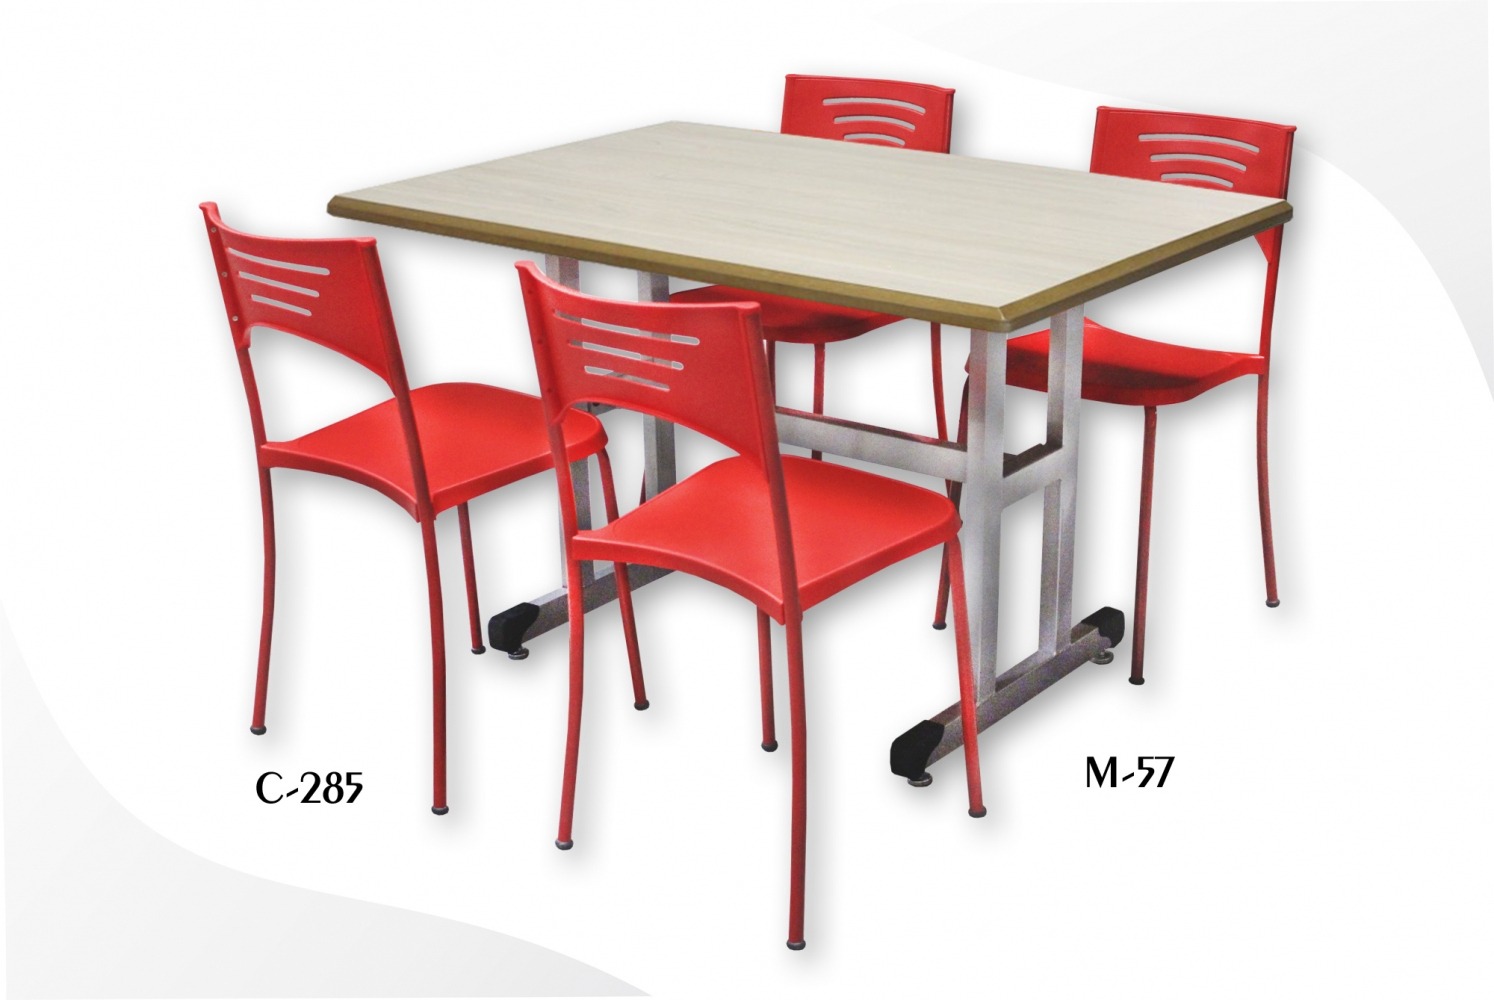 Como selecionar as mesas e cadeiras para refeitório de empresas?